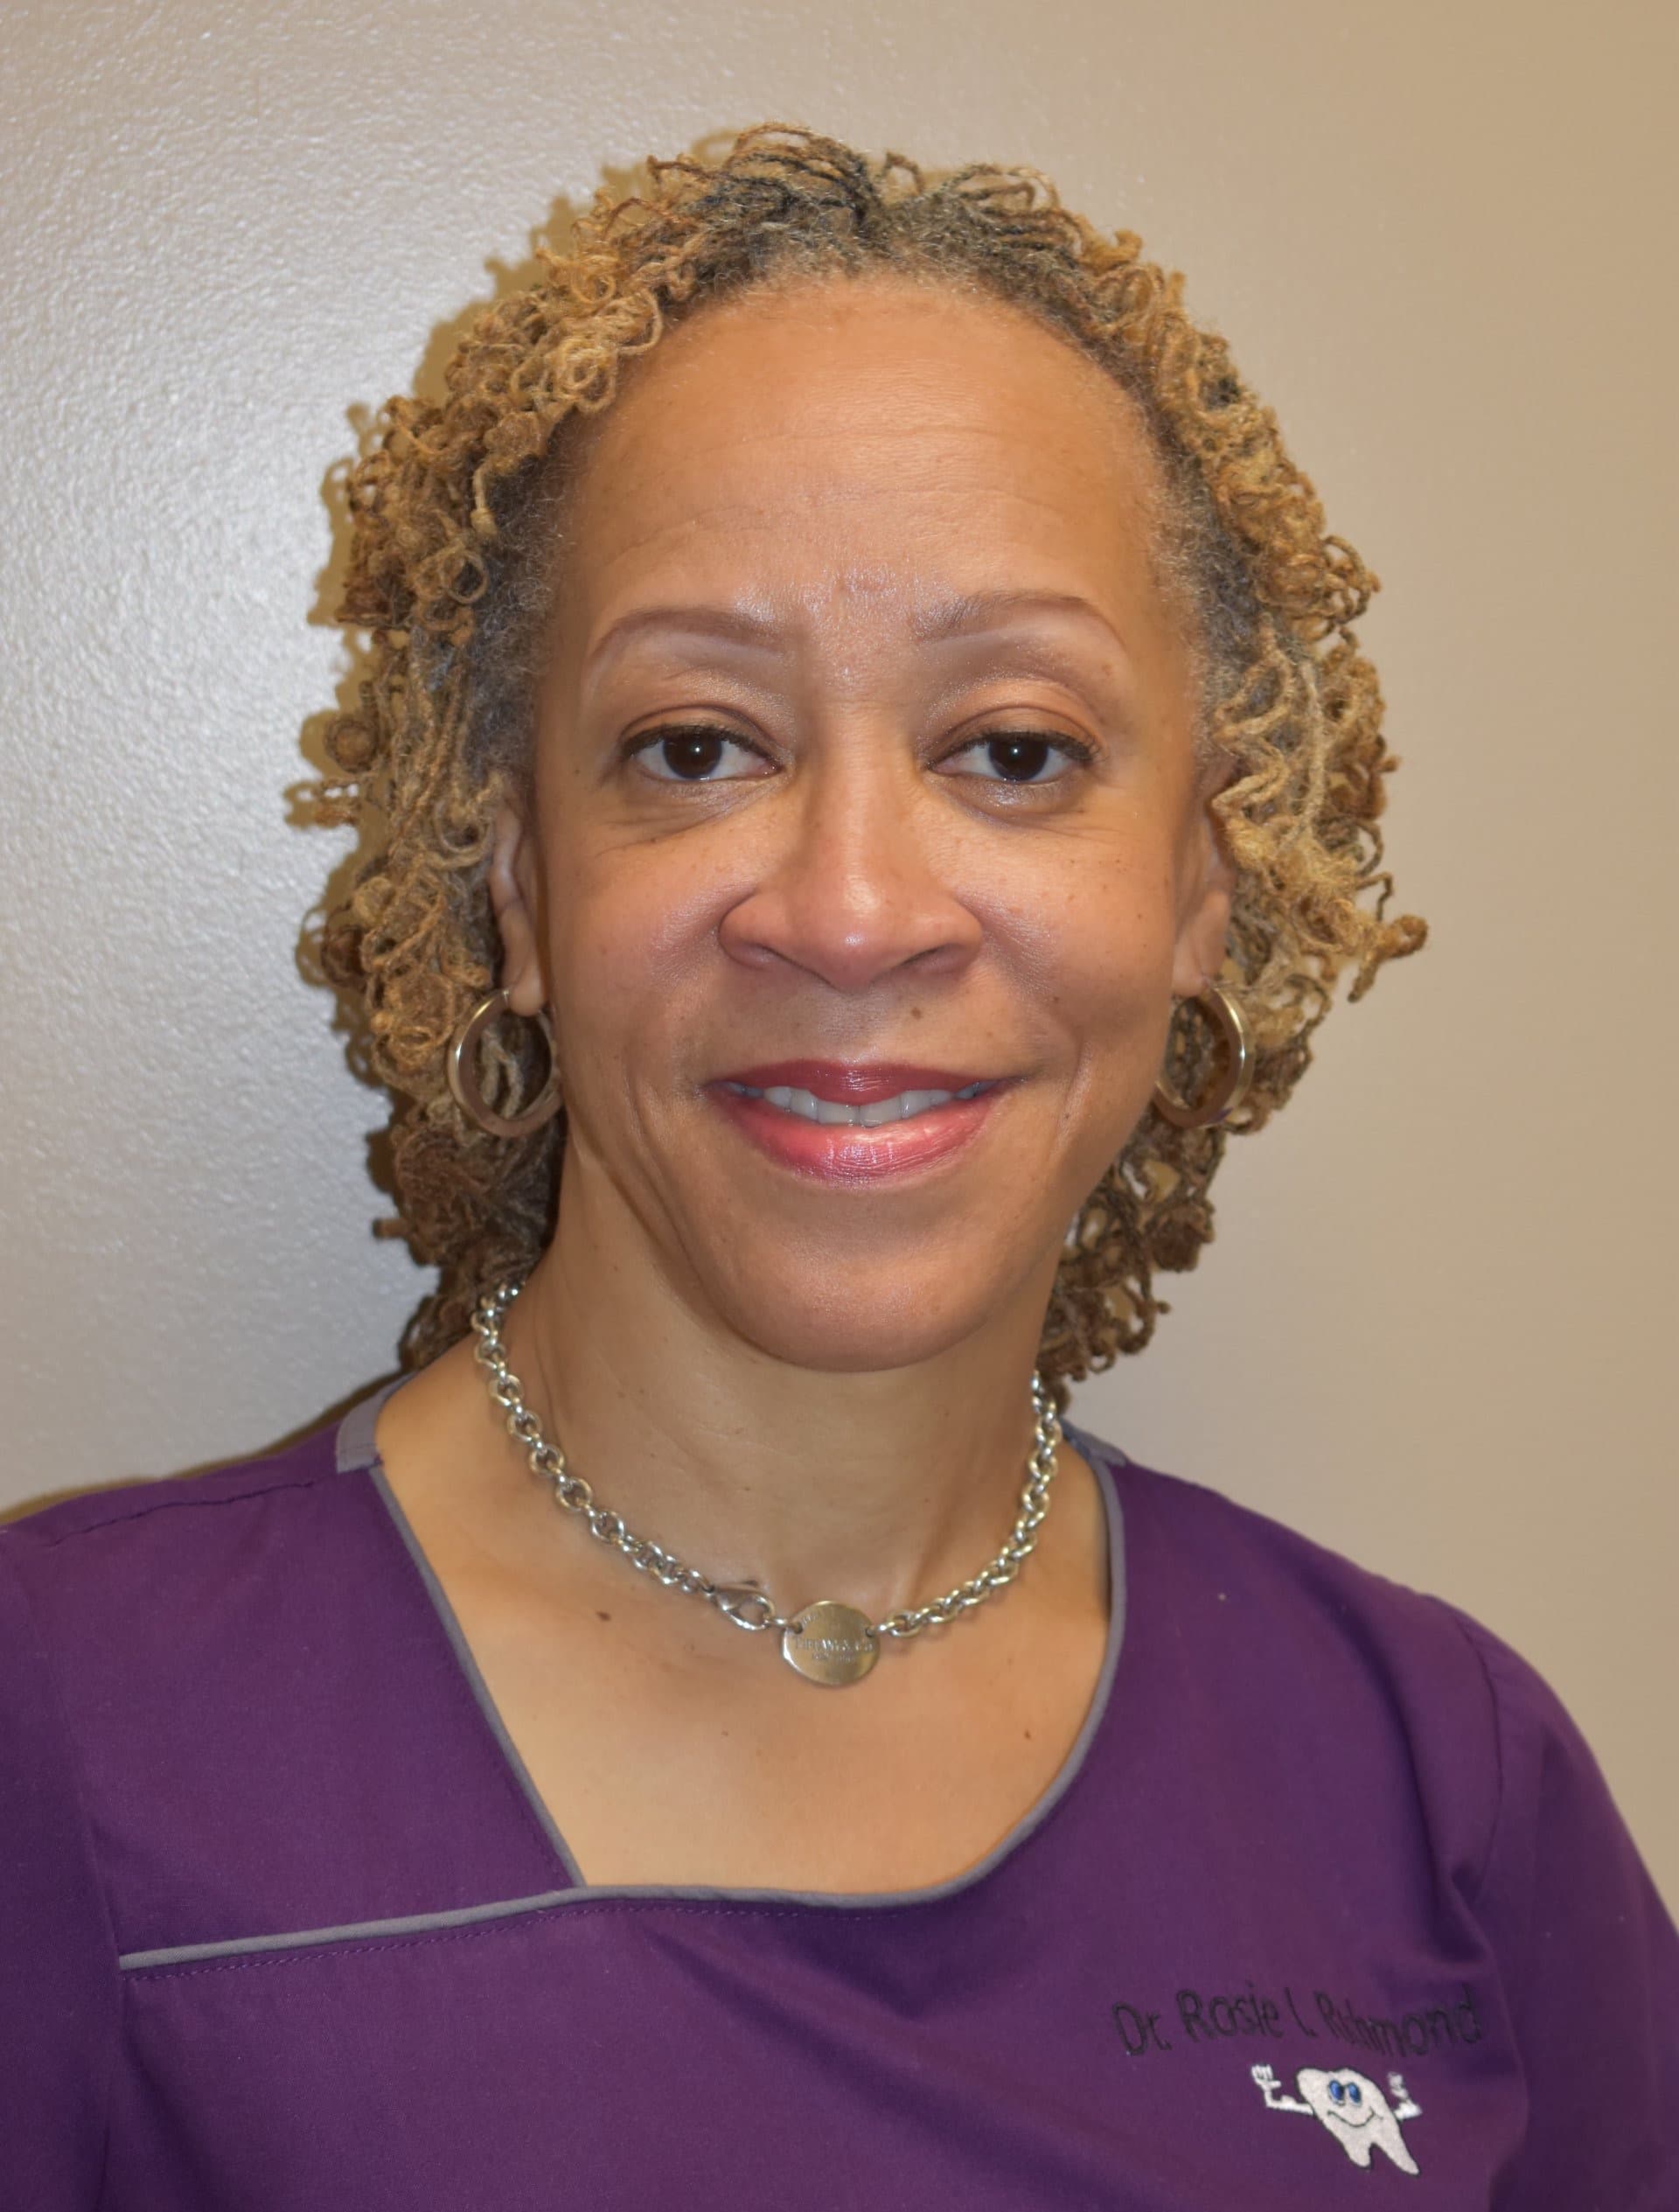 Dr. Rosie Richmond - Dentist in Memphis